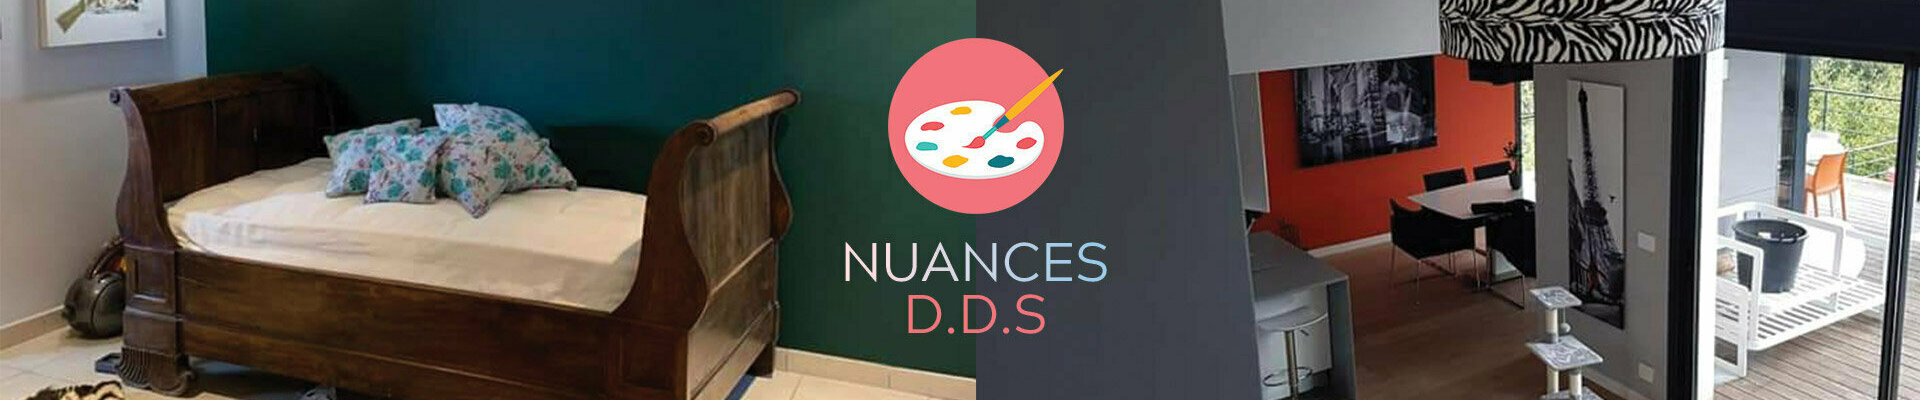 Peinture decorative à Montpellier | Nuances DDS - Artisan peintre